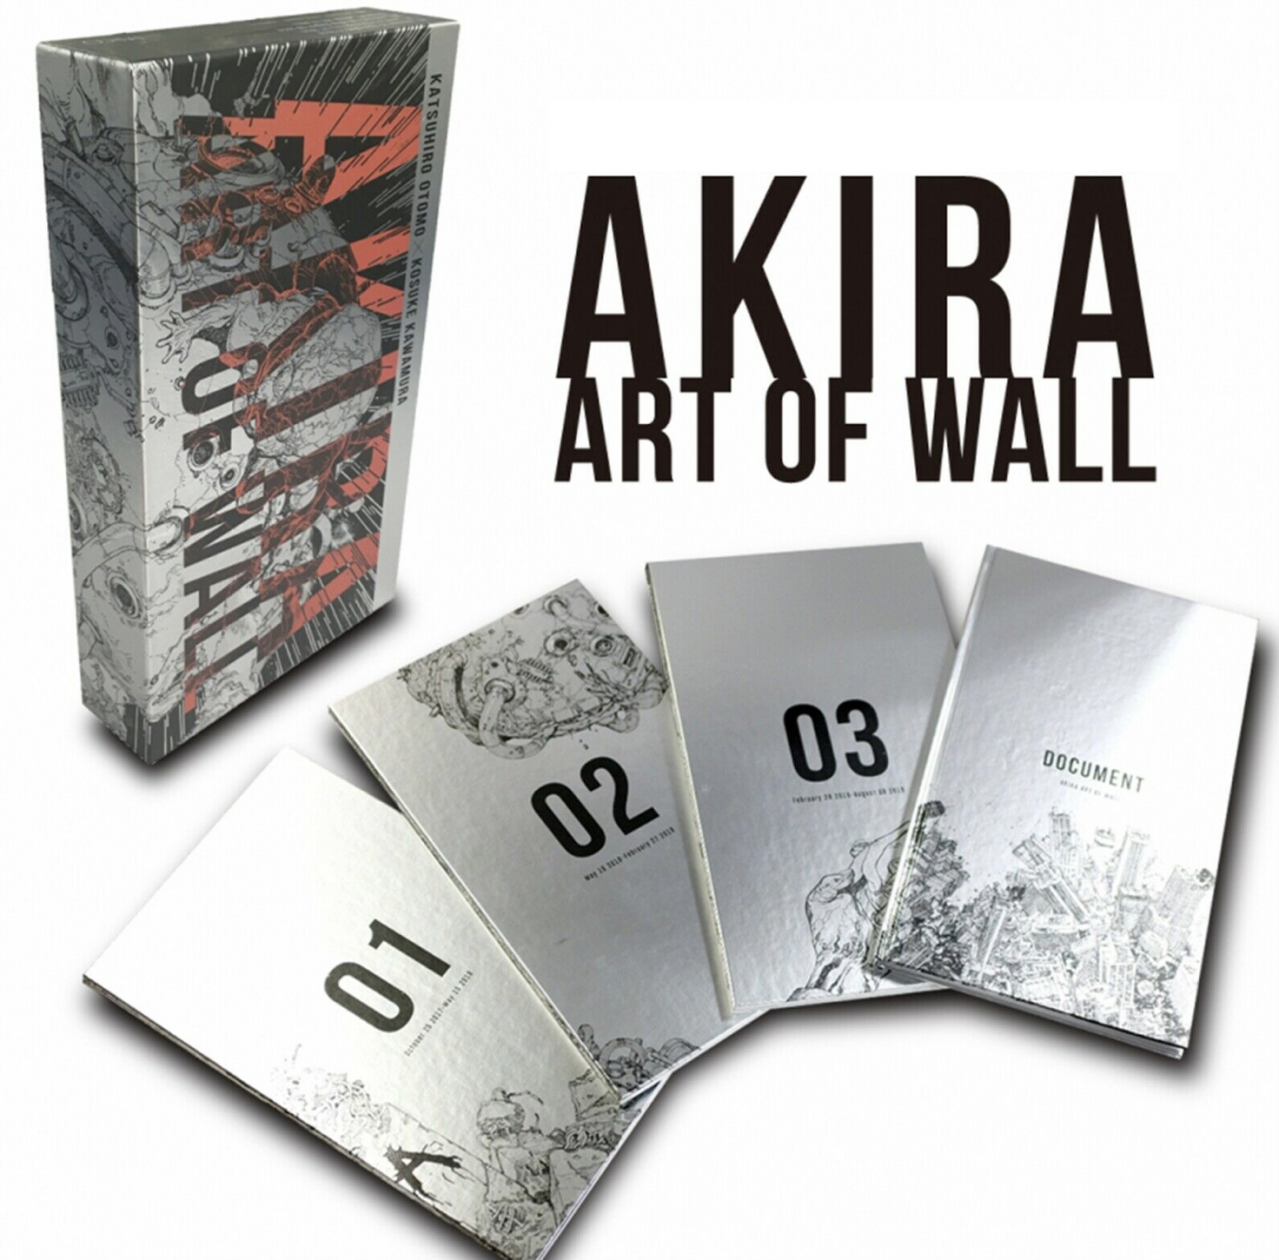 Akira - Le Coffret (Manga) - Steelbook Jeux Vidéo